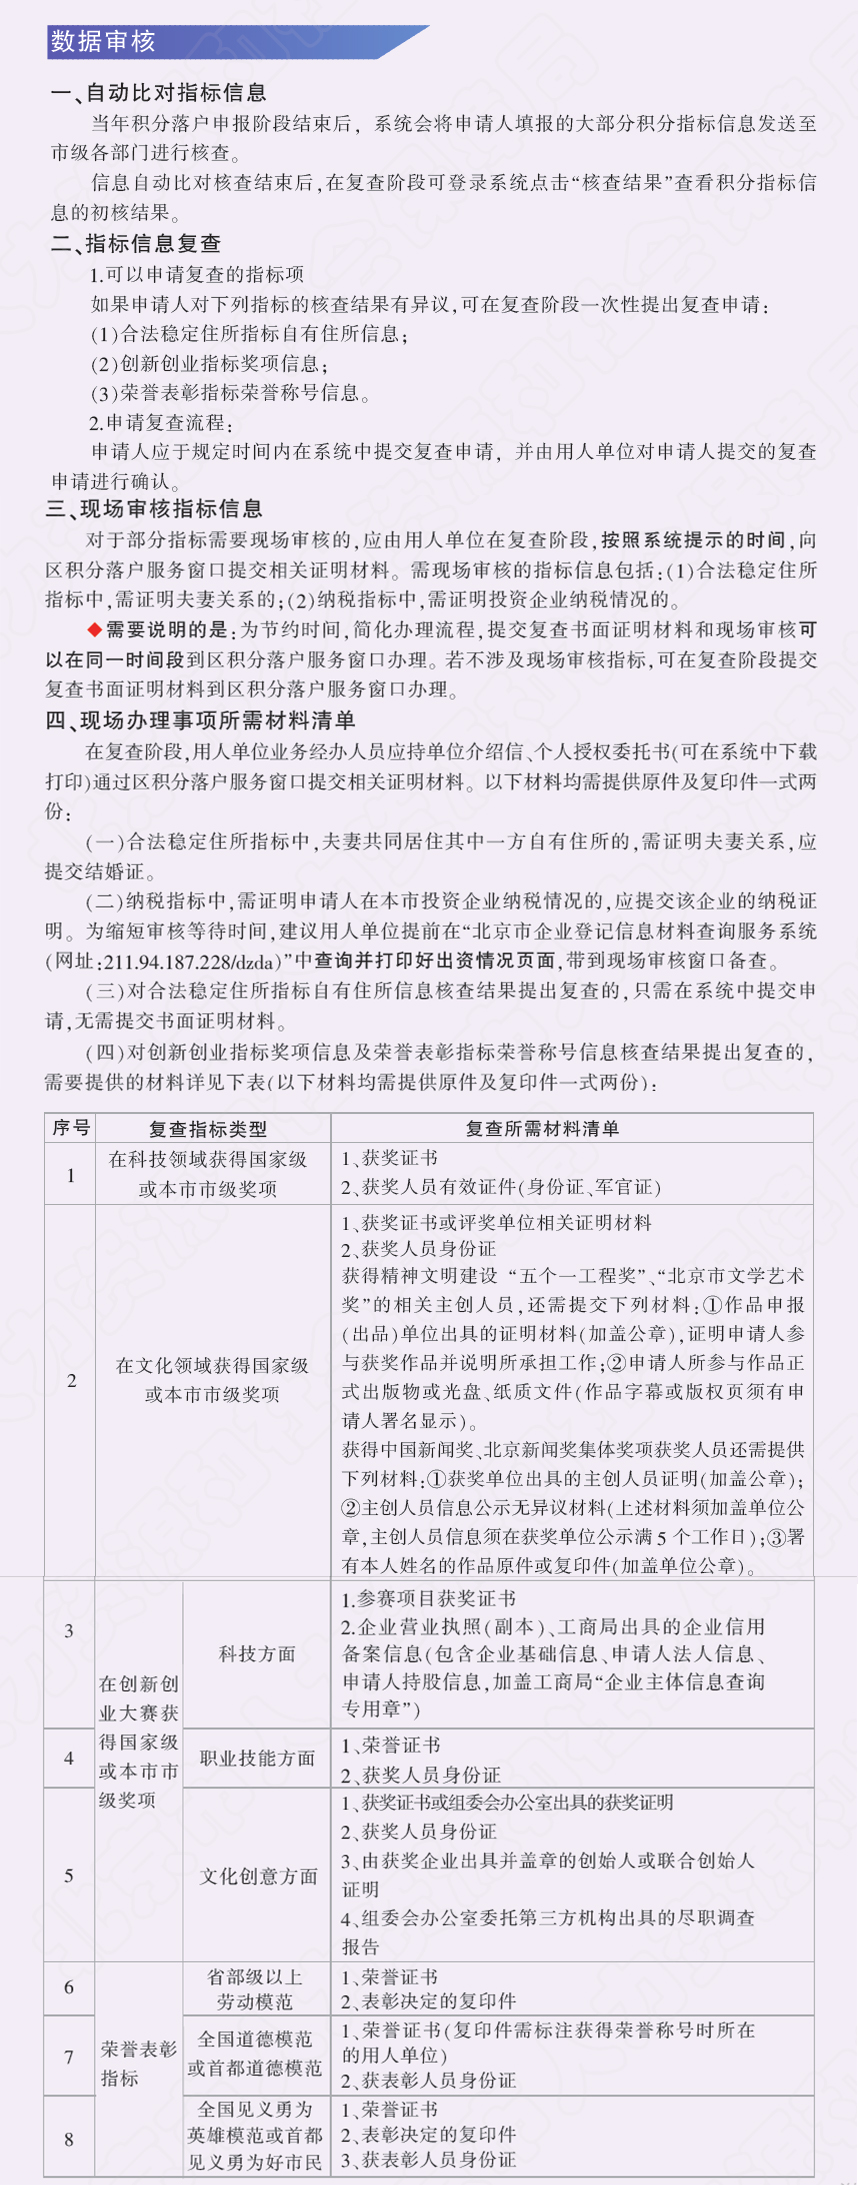 北京市积分落户指标项复查及现场审核流程.jpg